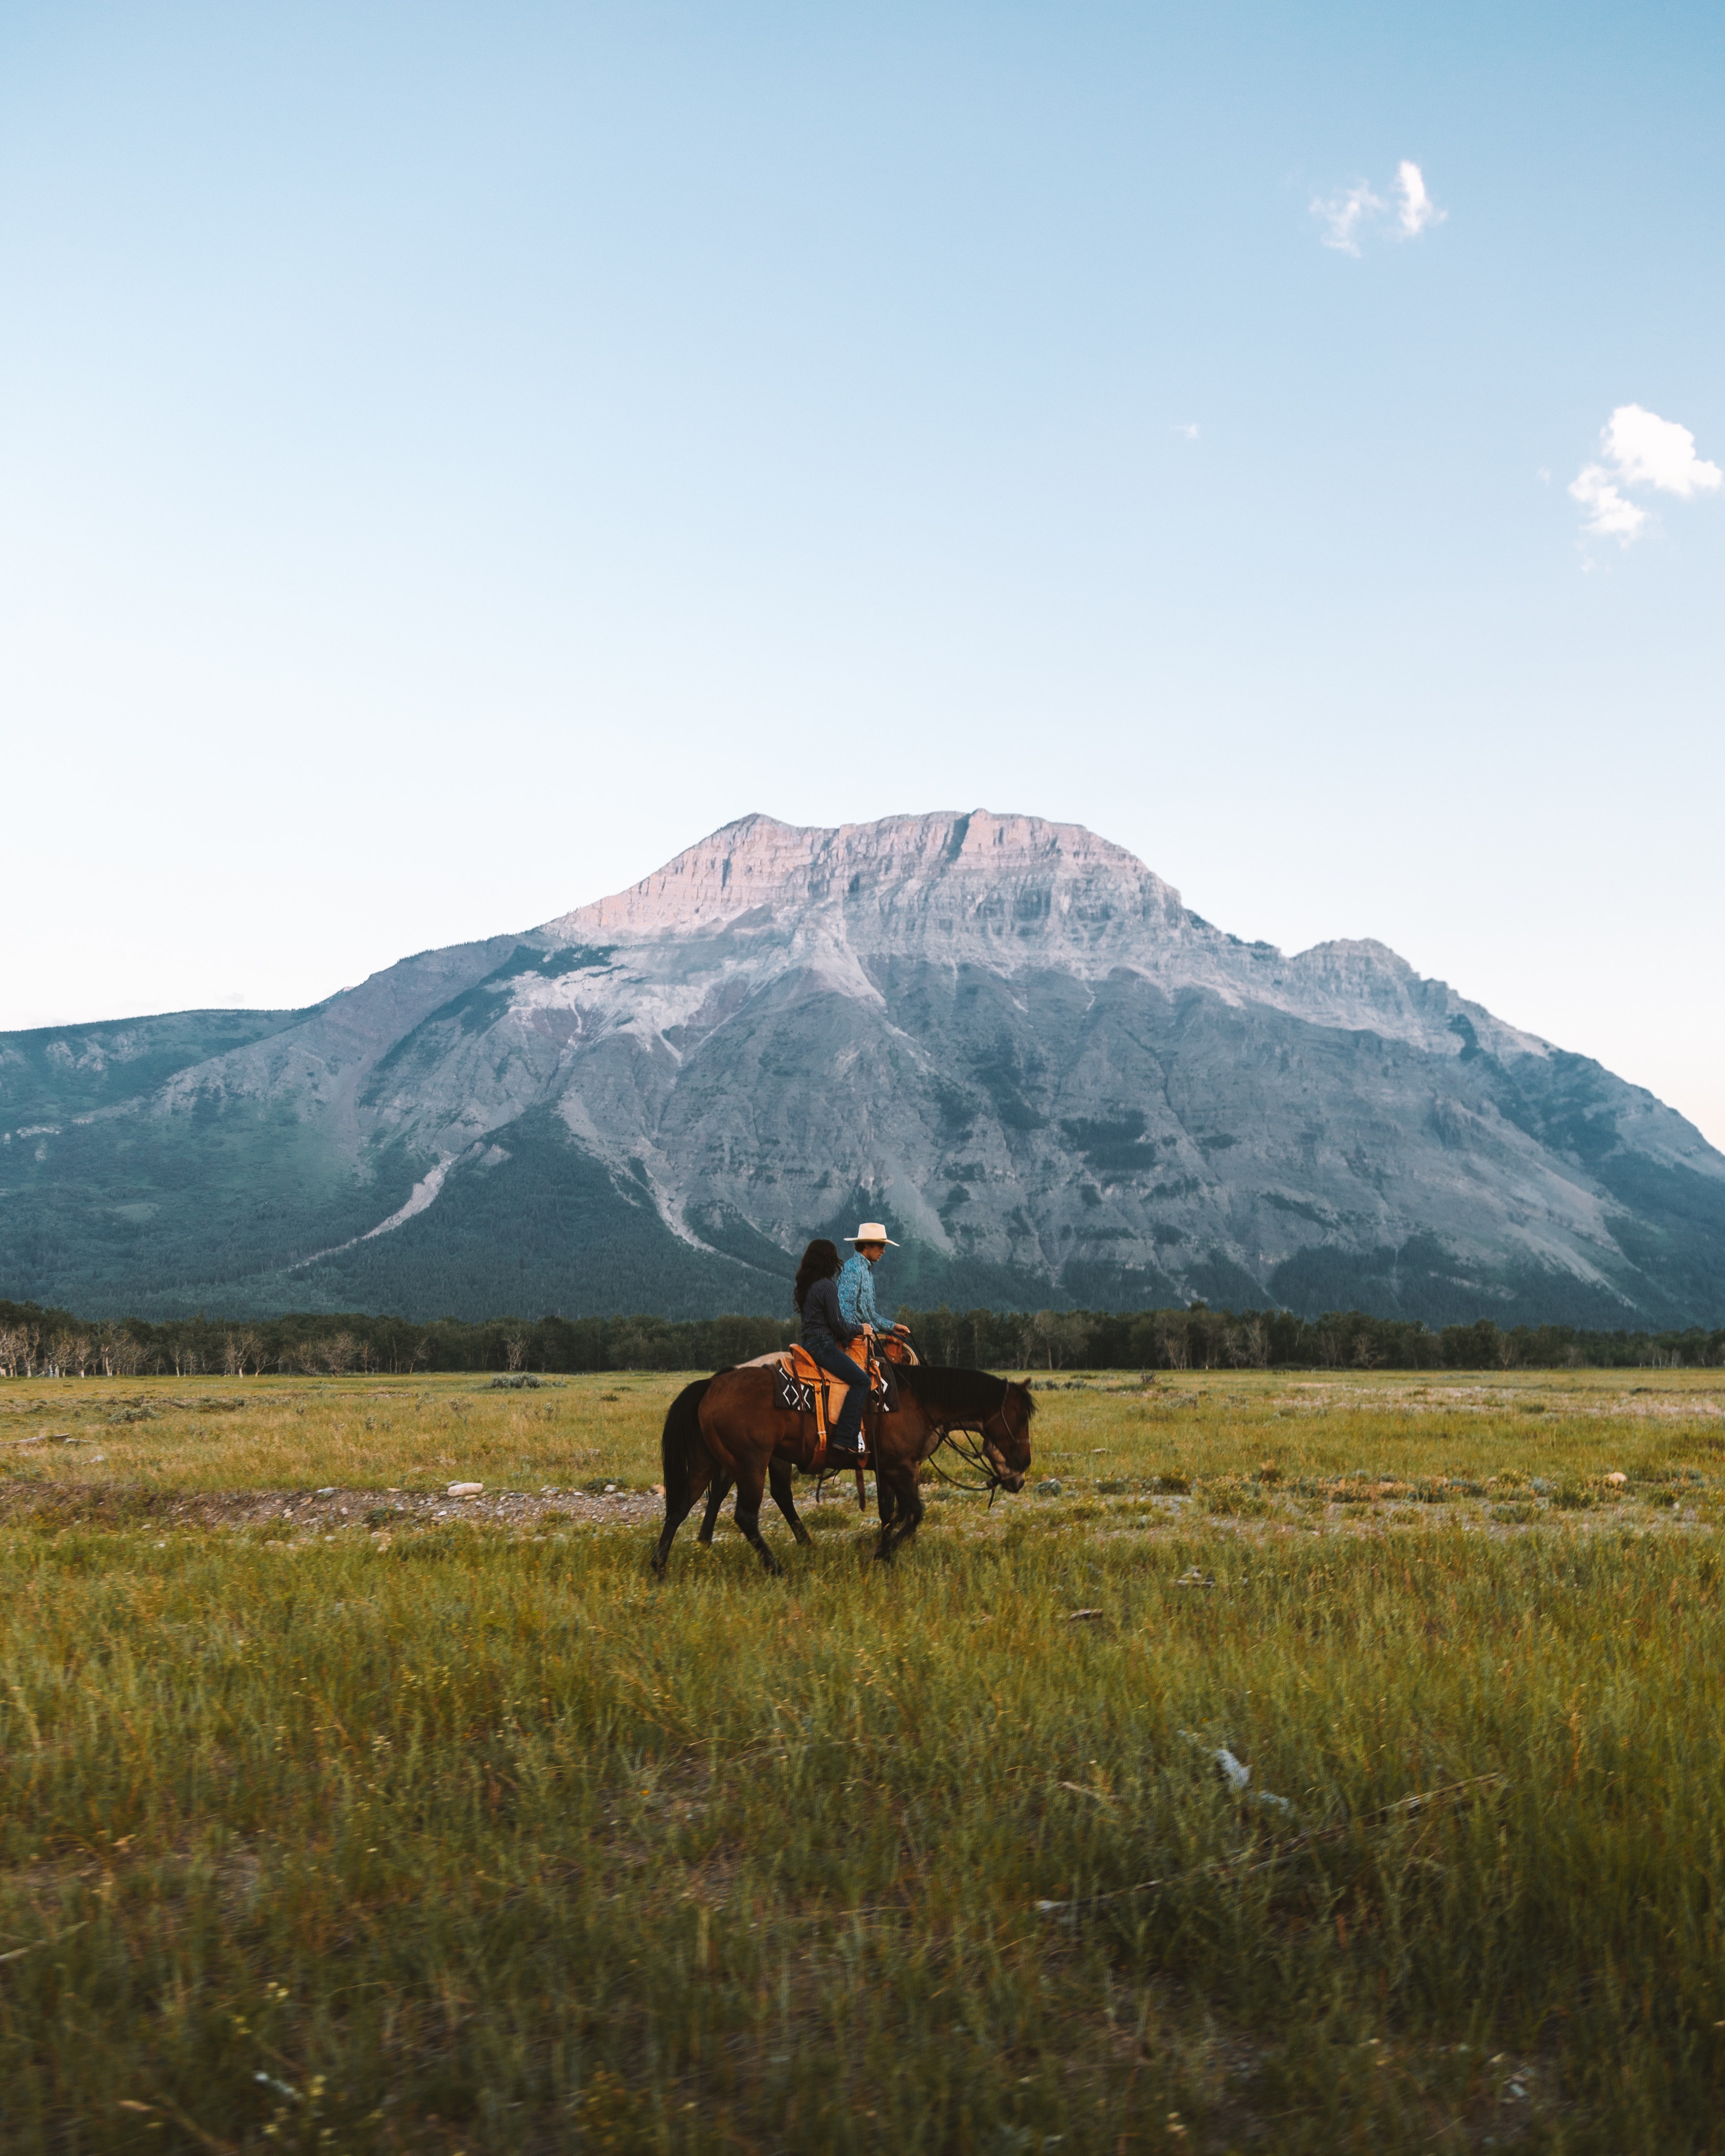 Un hombre y una mujer montando a caballo en el campo con una montaña detrás.